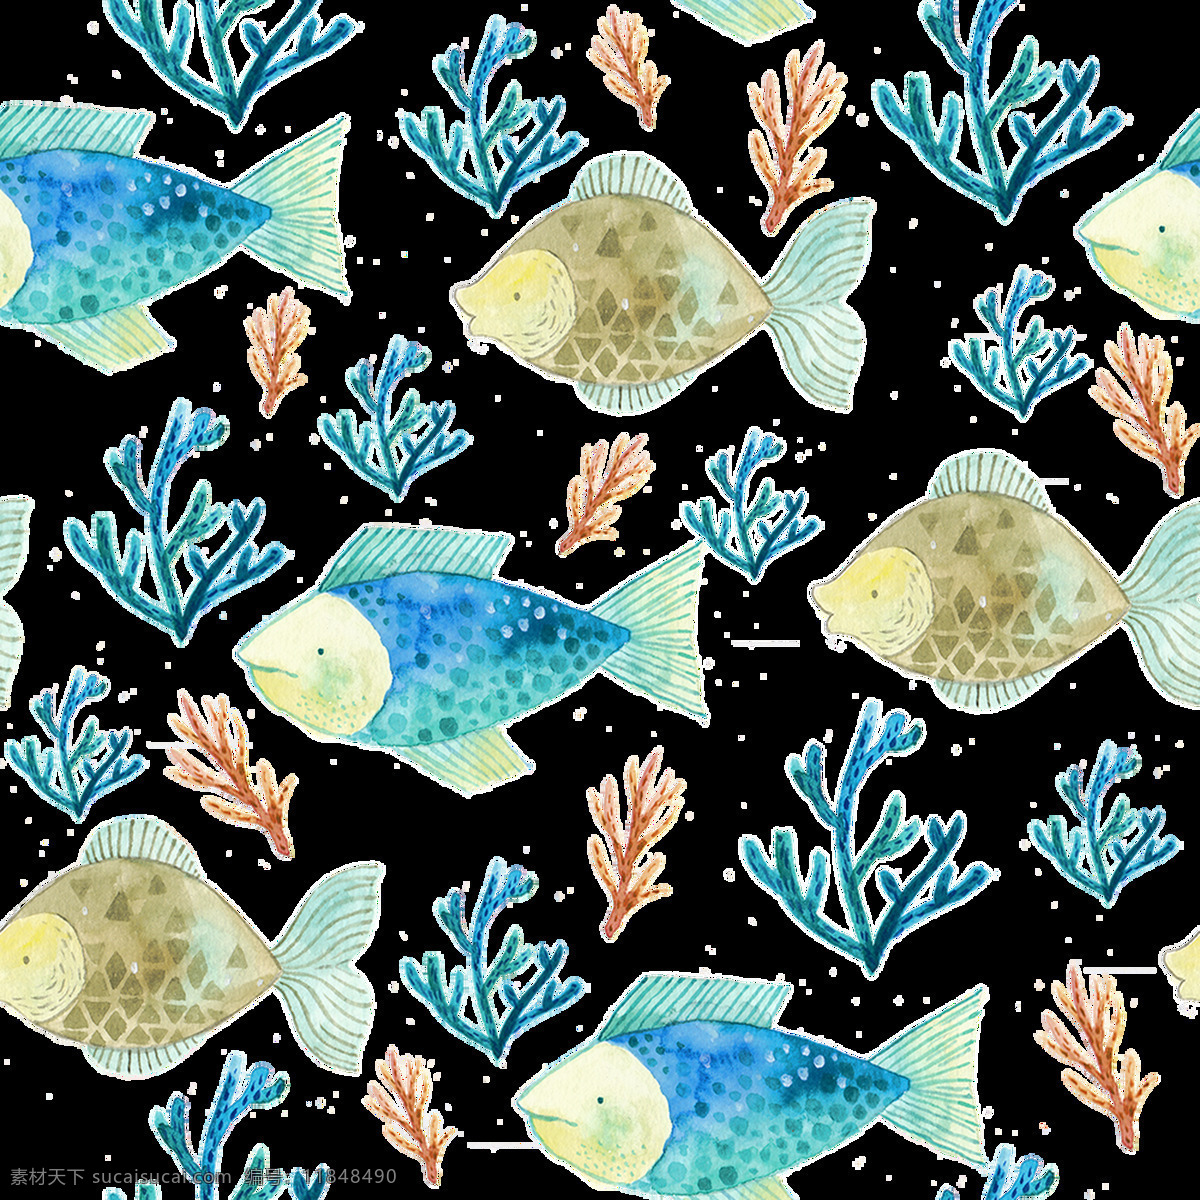 鱼类 卡通 透明 多彩 水彩 免扣 手绘 透明素材 装饰 设计素材 淘宝素材 海报设计装饰 装饰图案